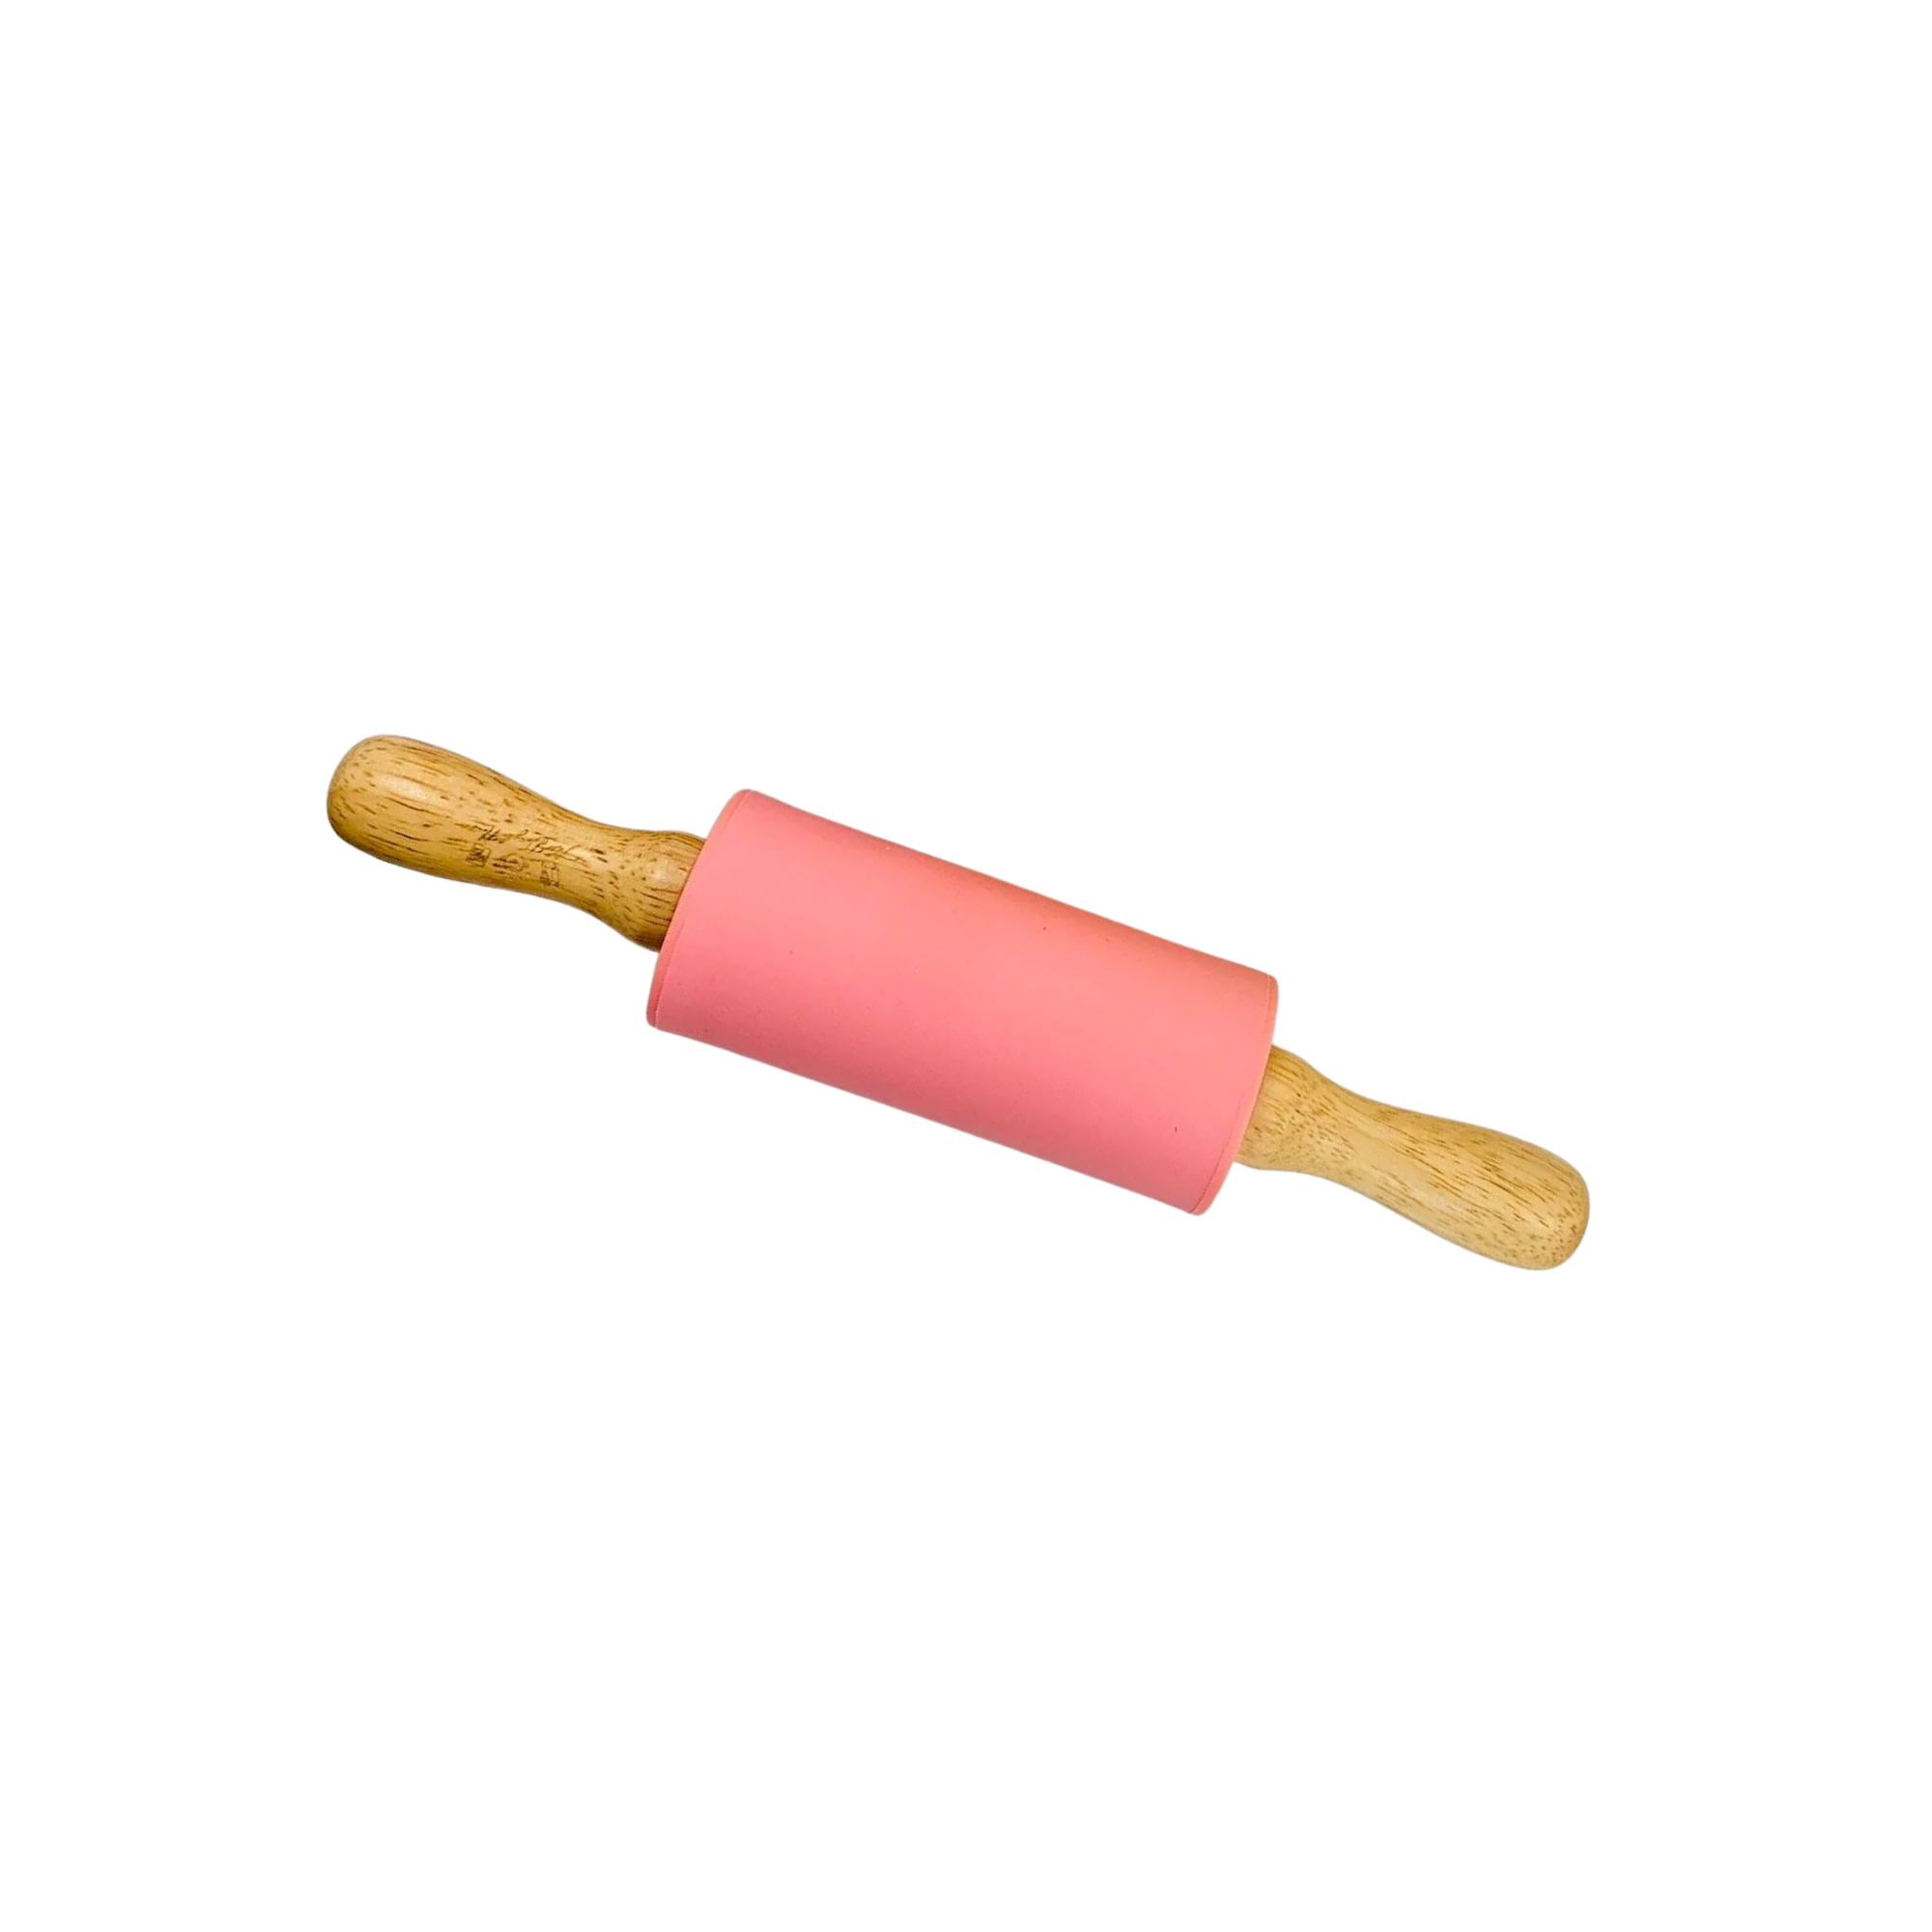 Magical Sensory Dough Rolling Pin